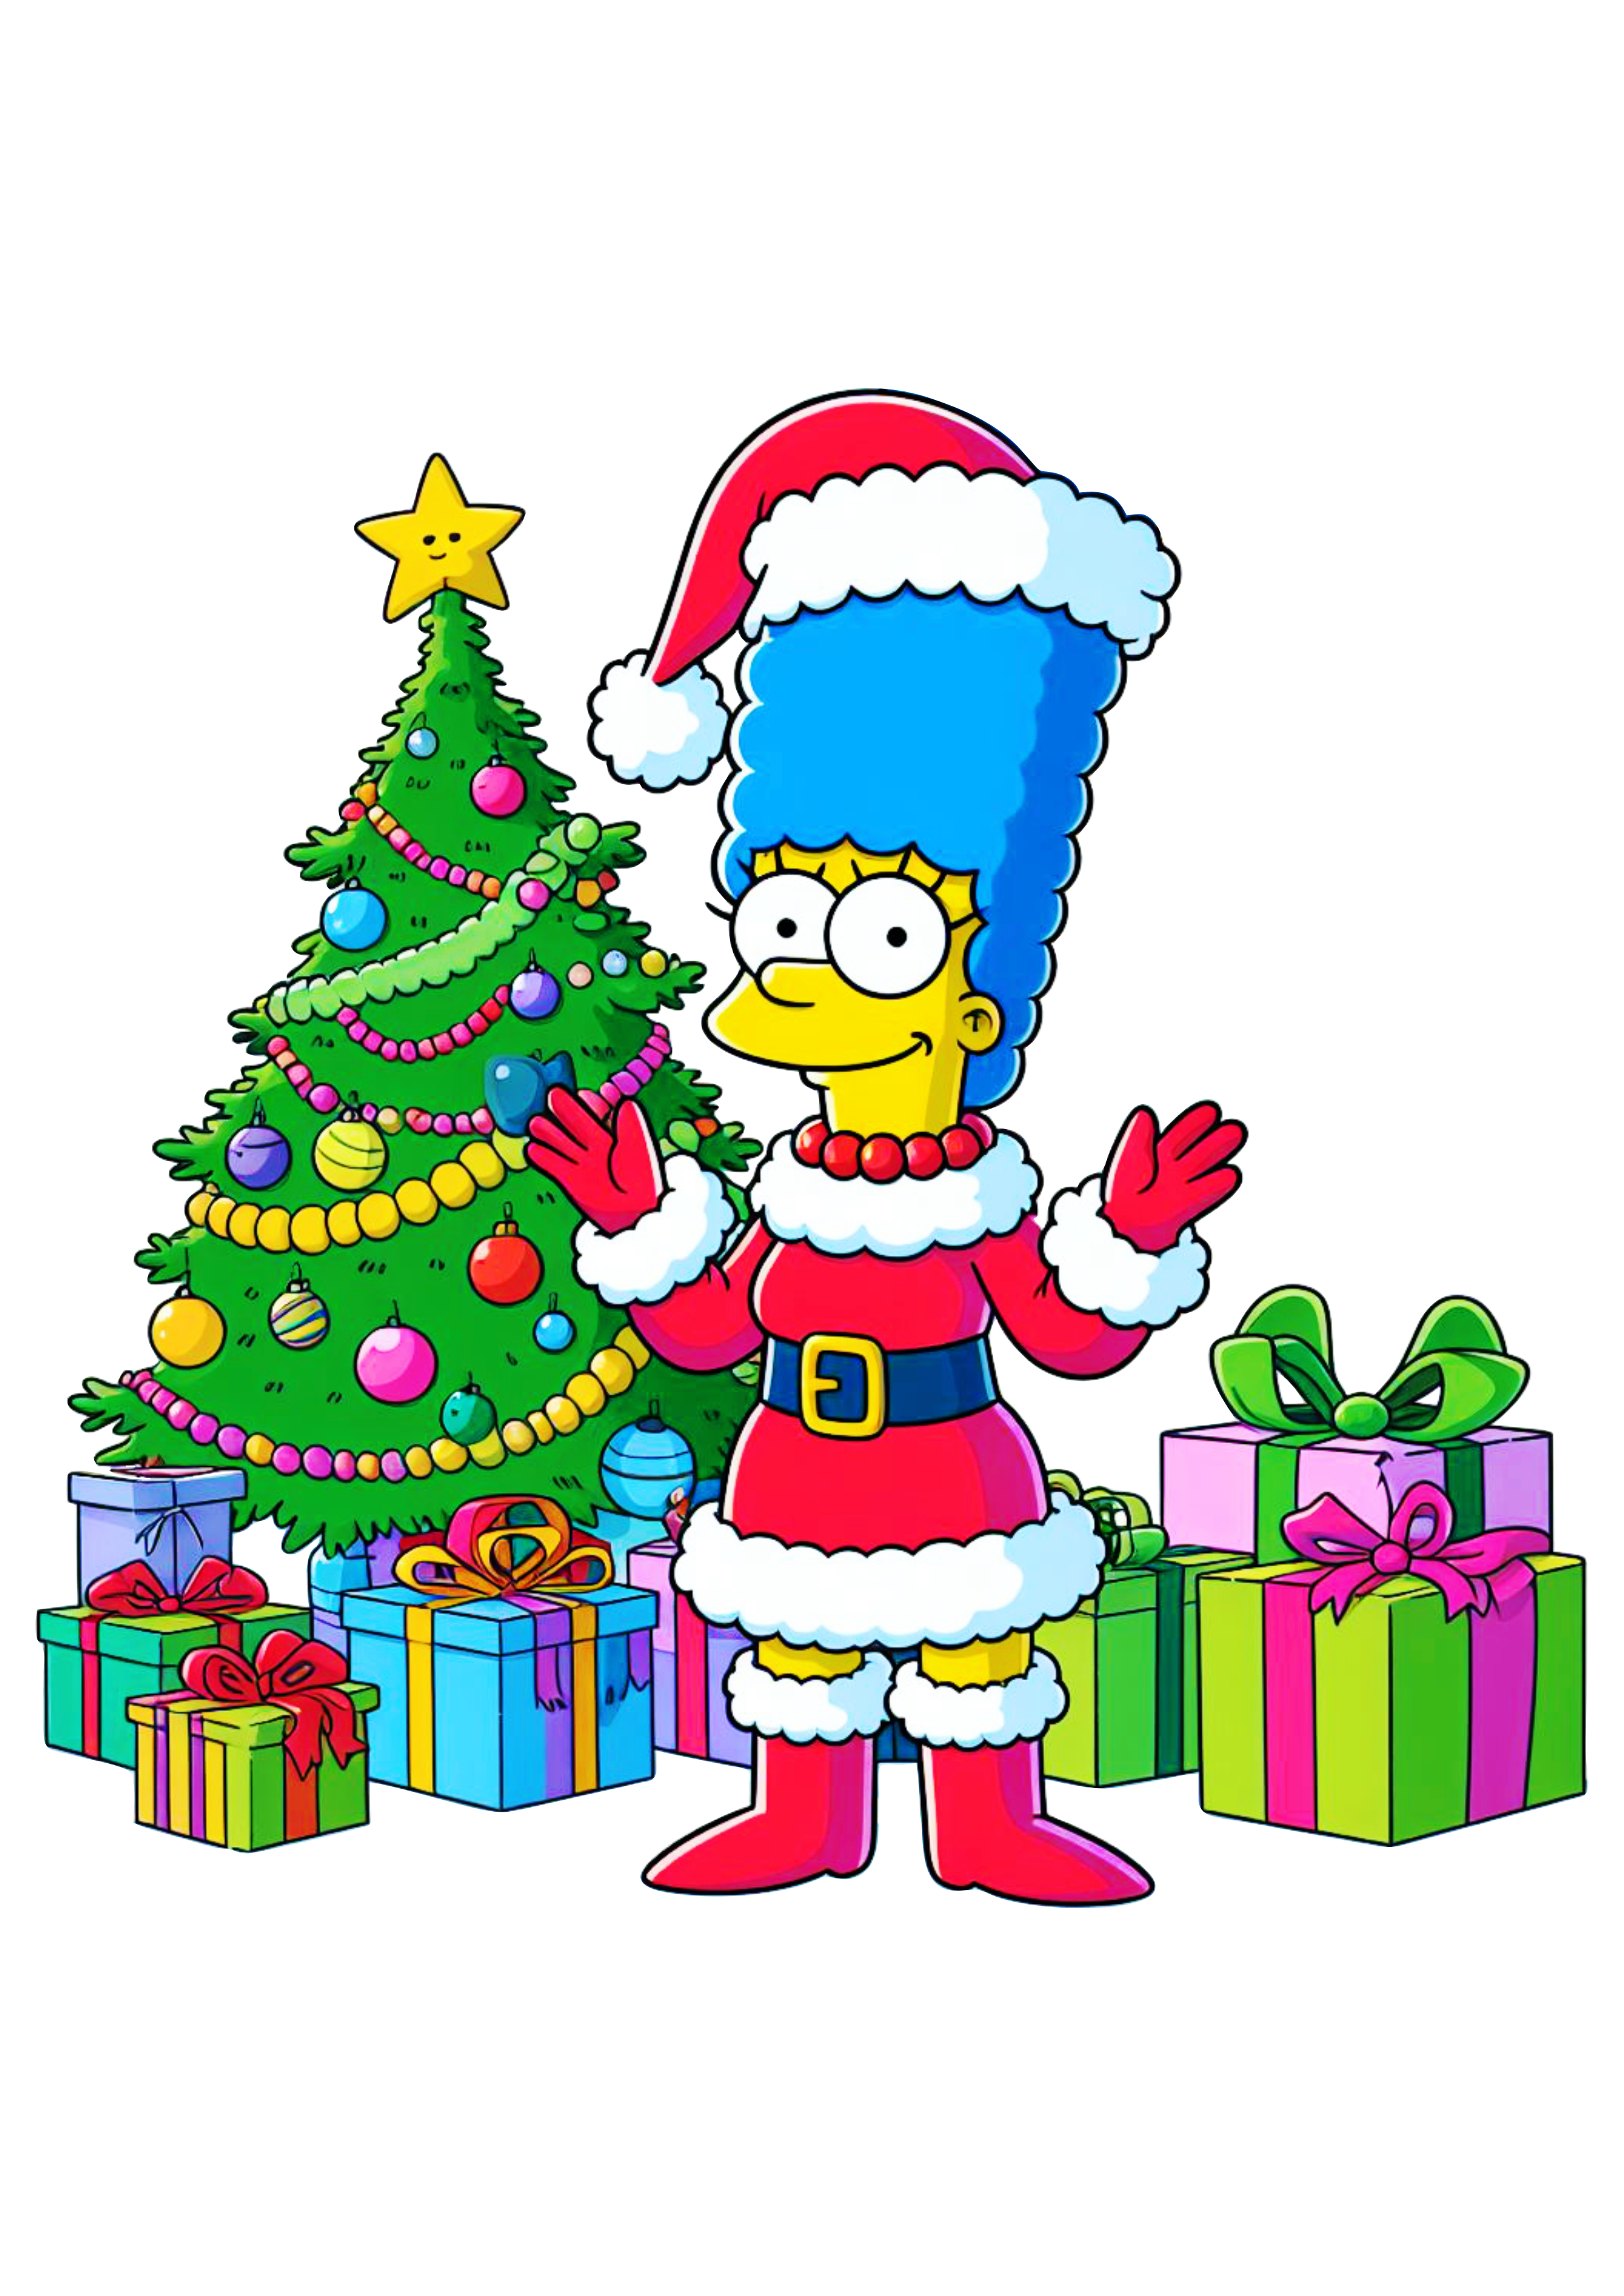 Os simpsons Marge com gorro do Papai Noel decoração de natal desenho fundo transparente árvore de natal e presentes png